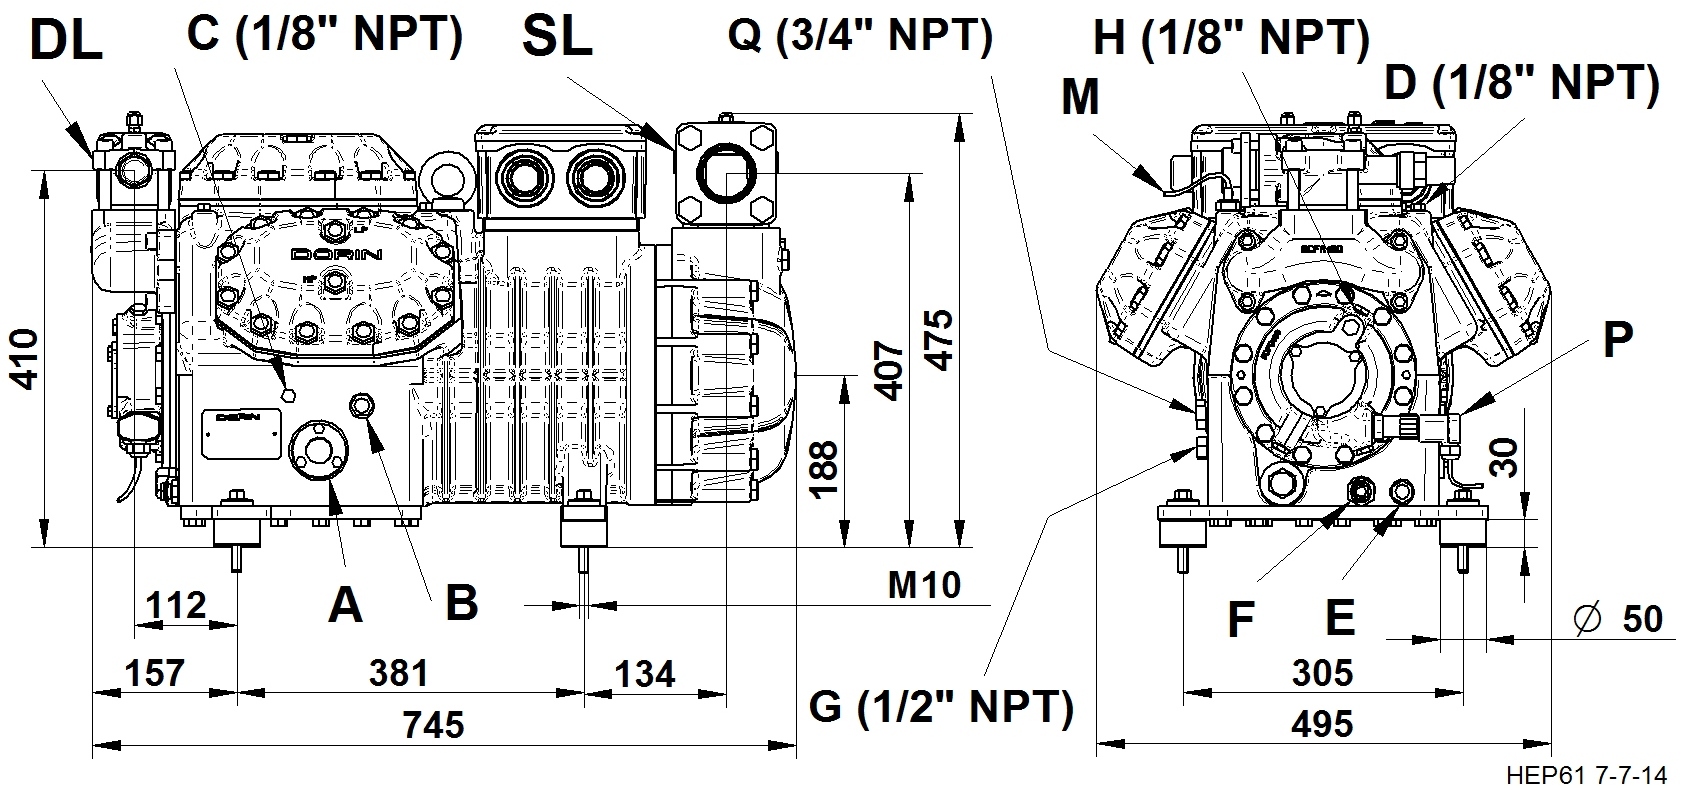 H2600EP - Compressori Semiermetici per R134a Serie HEP | DORIN